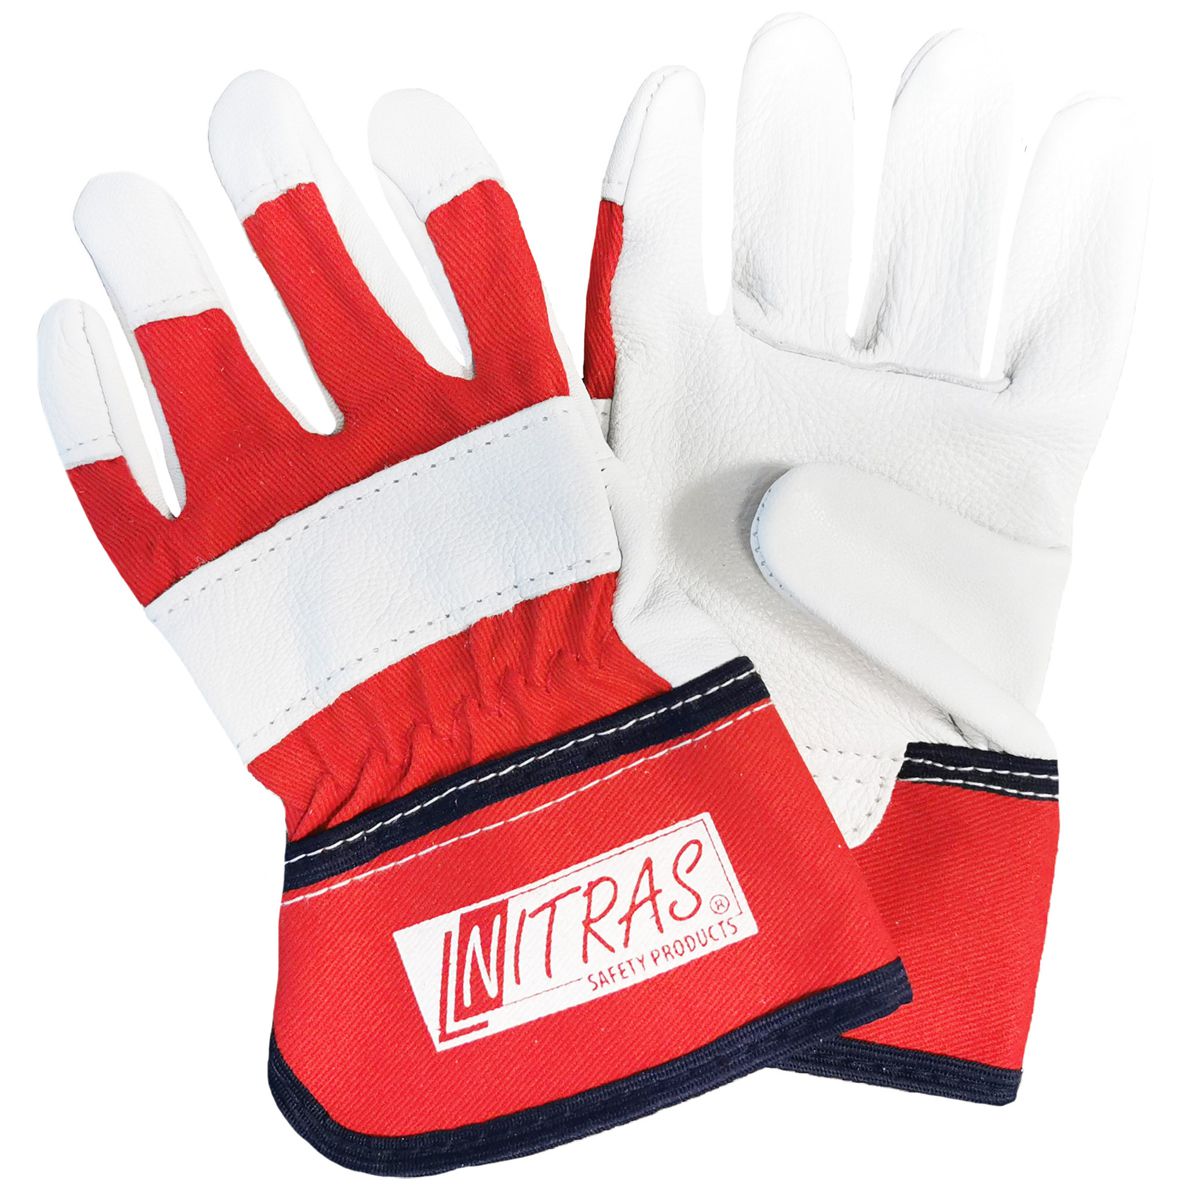 3 Paar NITRAS 1408 Garten-Handschuhe für Kinder - Schutz- & Bastel-Handschuhe aus Leder - EN 388 - Rot/Weiß - 7-8 Jahre